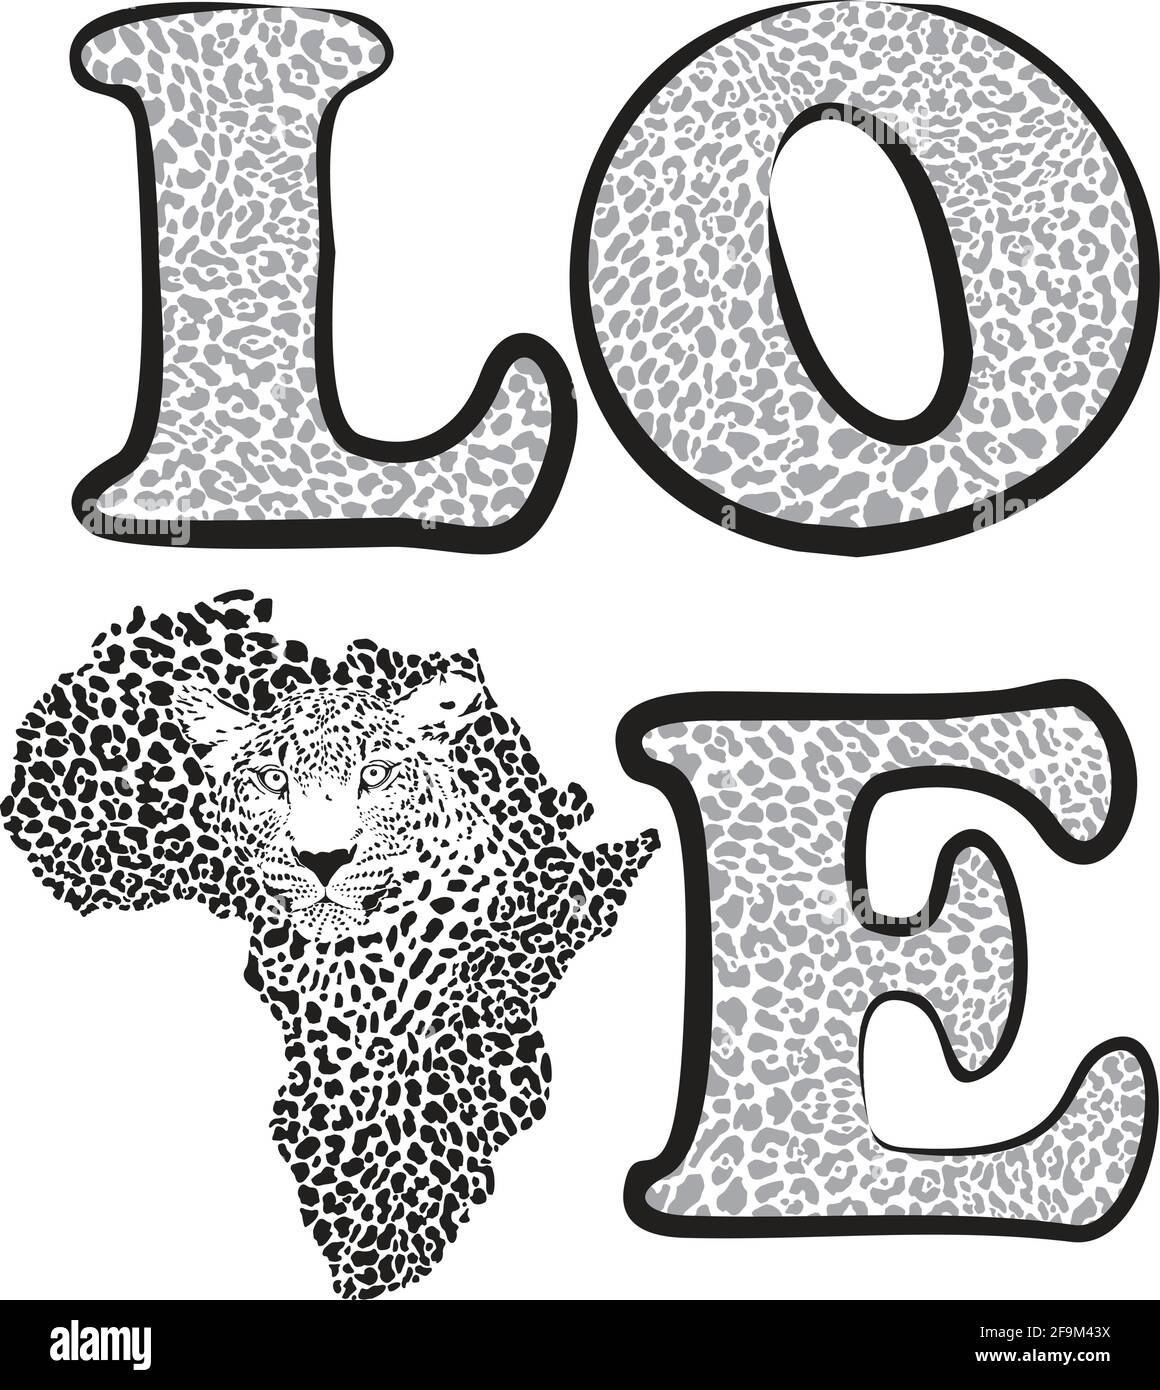 L'amour de protéger l'environnement sur le continent africain Illustration de Vecteur